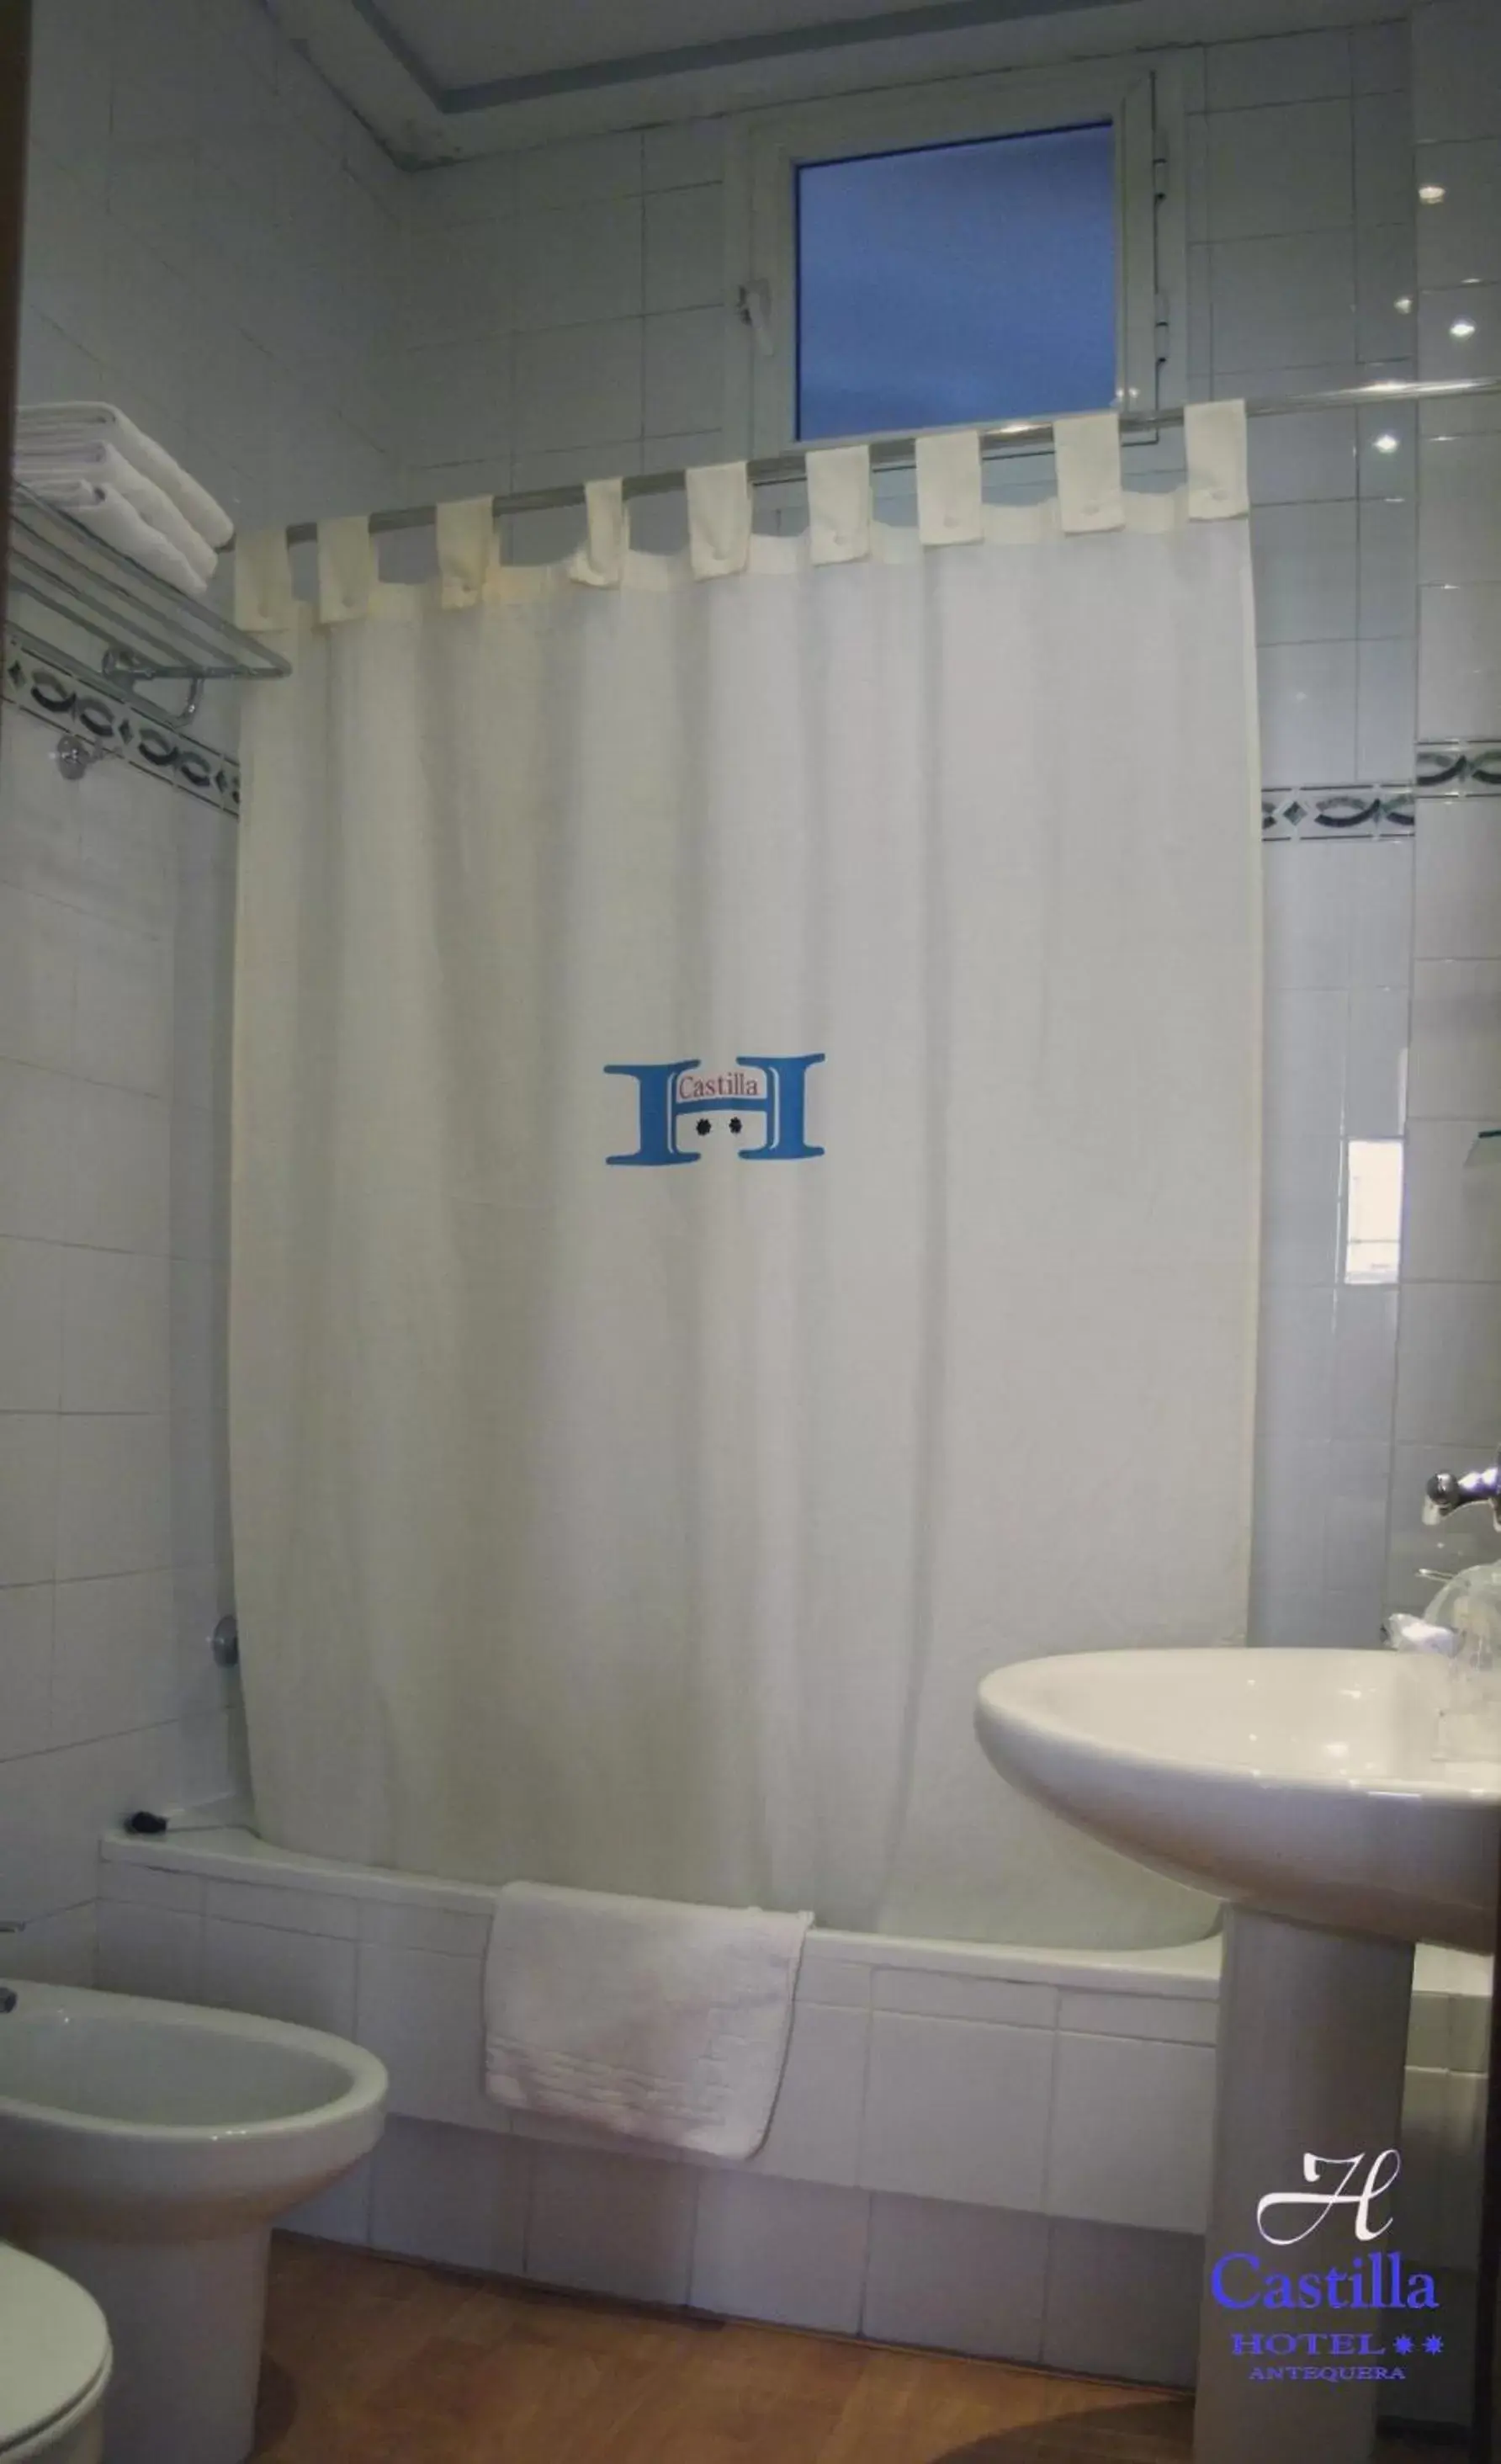 Bathroom in Hotel Castilla